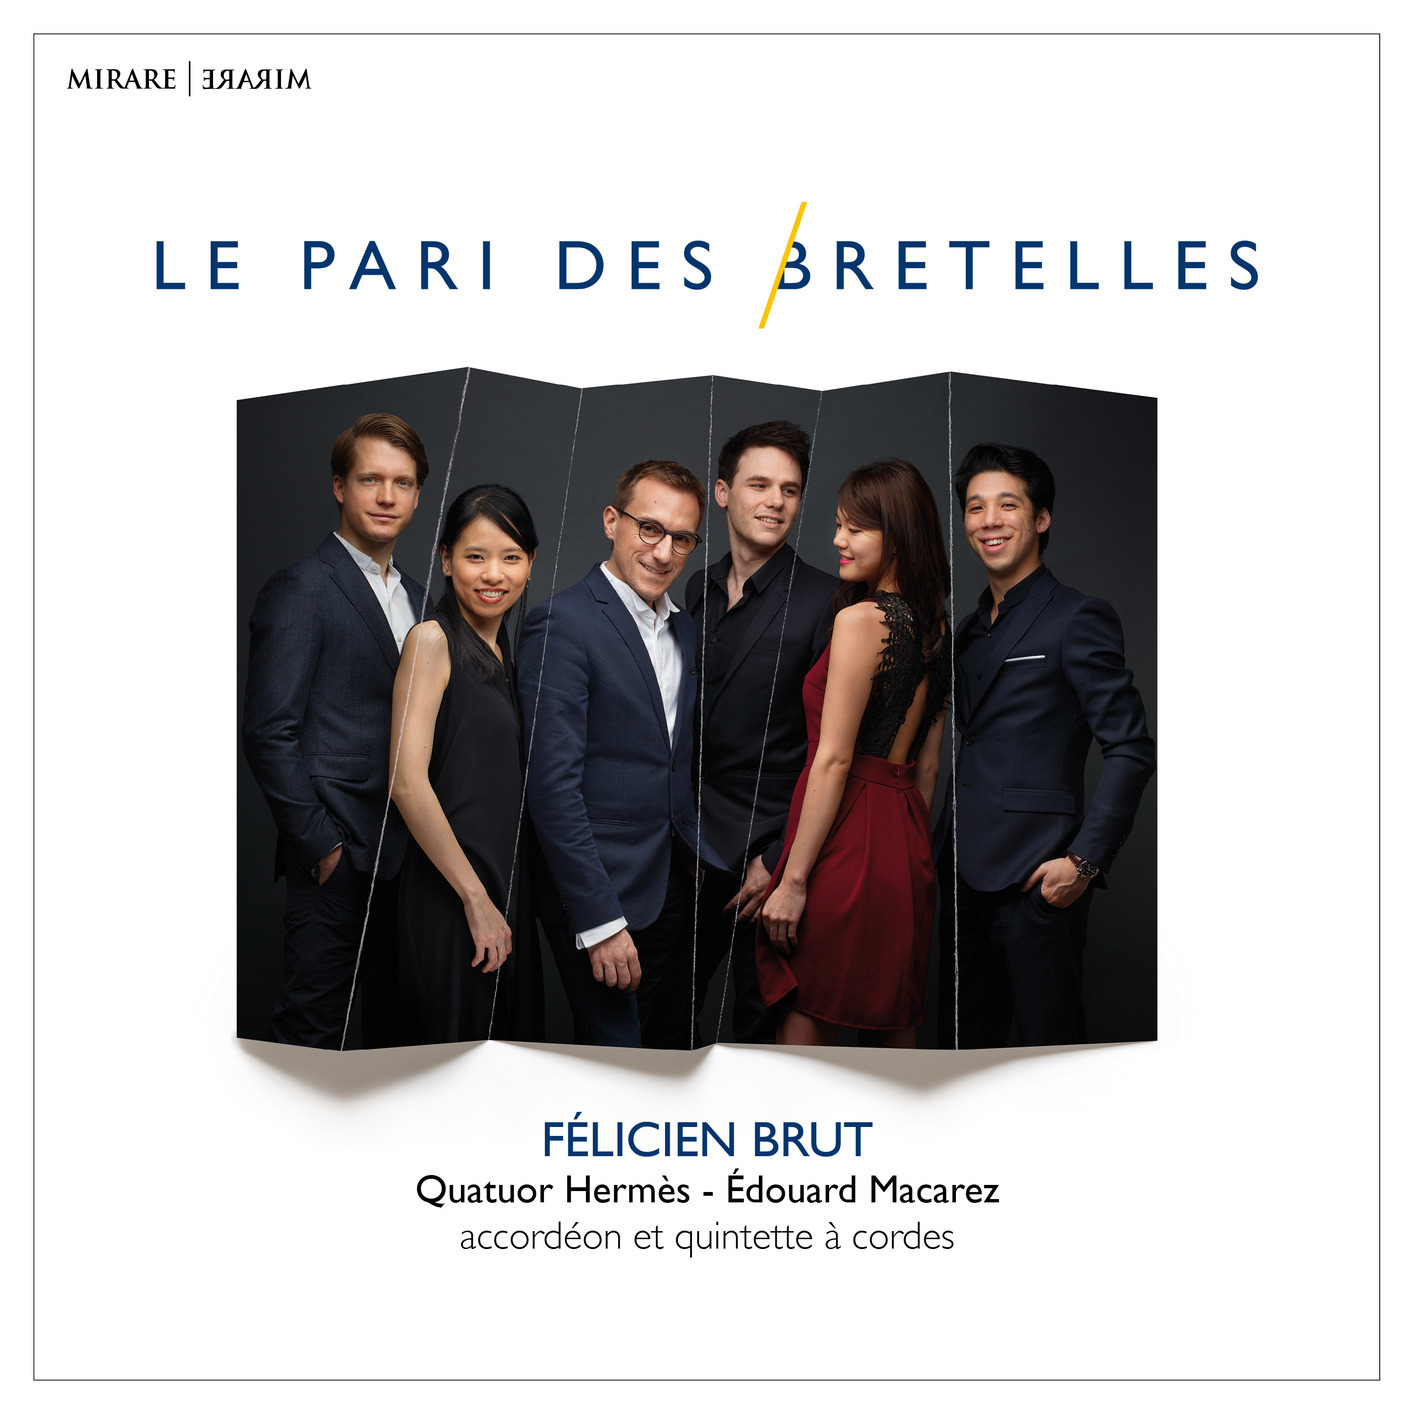 Felicien Brut & Quatuor Hermes & Edouard Macarez – Le pari des bretelles (2019) [FLAC 24bit/96kHz]